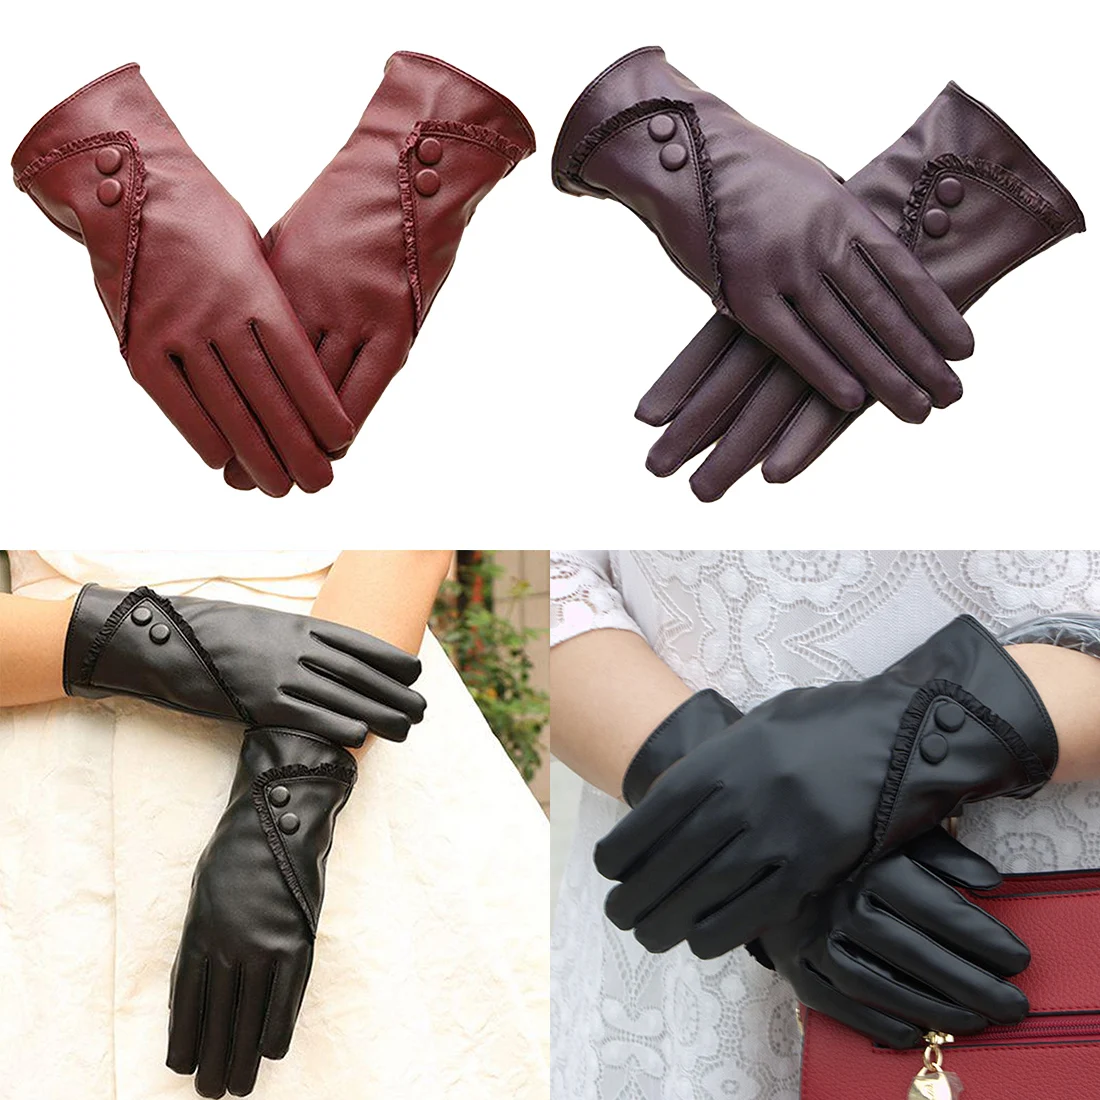 Горячие твердые женщины девушка из искусственной кожи зима супер теплые кожаные женские перчатки кашемир женские зимние перчатки